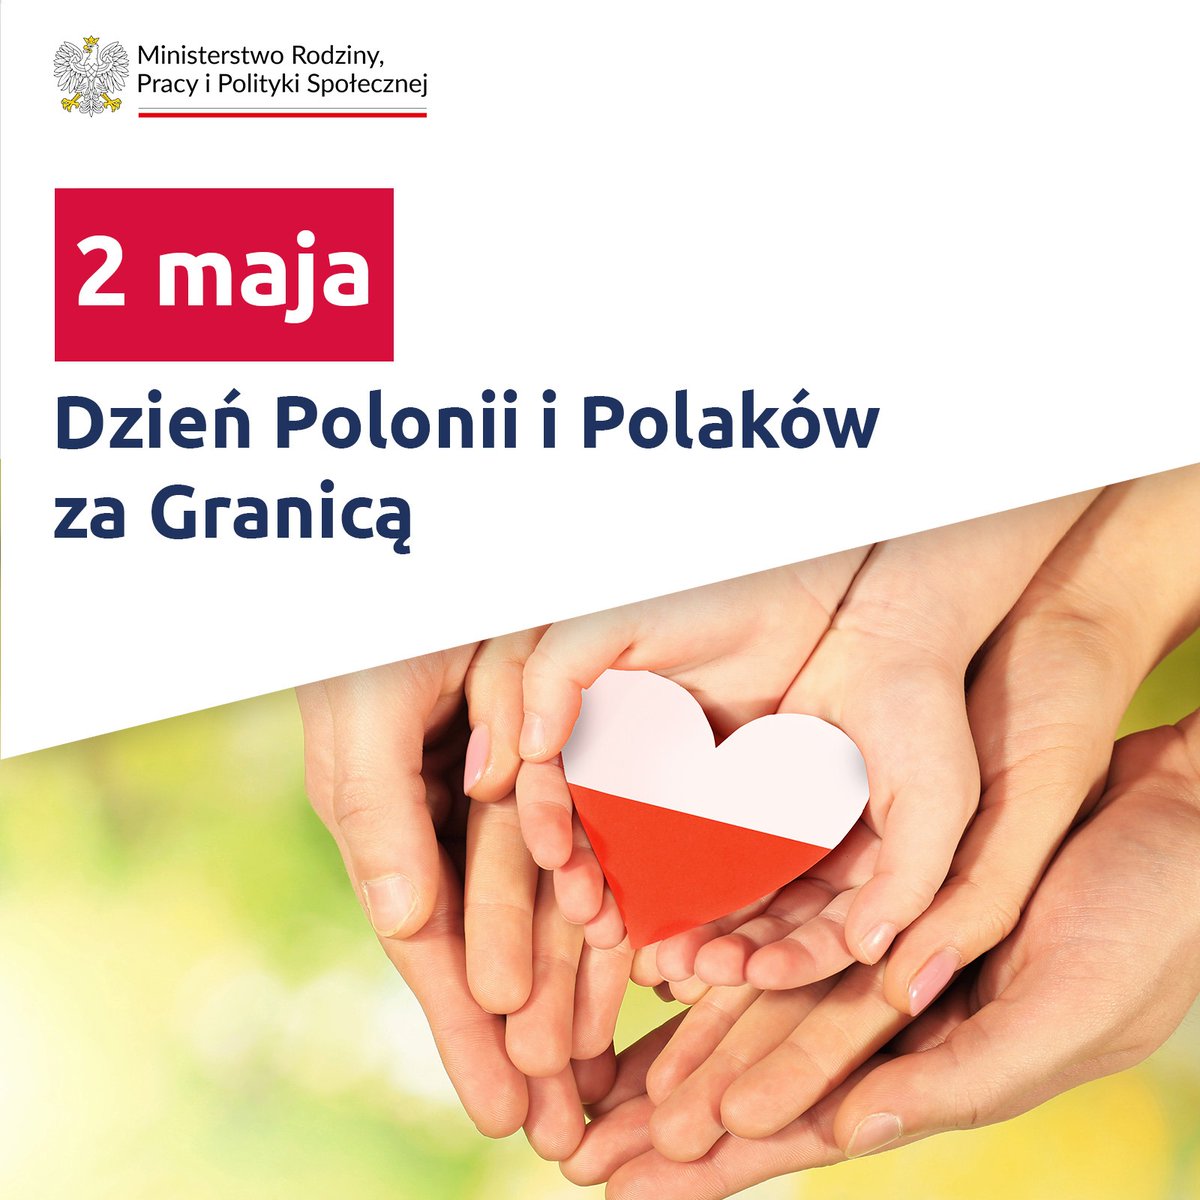 🇵🇱 Dzisiaj obchodzimy również Dzień Polonii i Polaków za Granicą 🌍 Wszystkim Rodakom, niezależnie od tego, gdzie pokierował ich los, składamy najserdeczniejsze życzenia 😊 #DzieńPolonii #DzieńPolakówZaGranicą